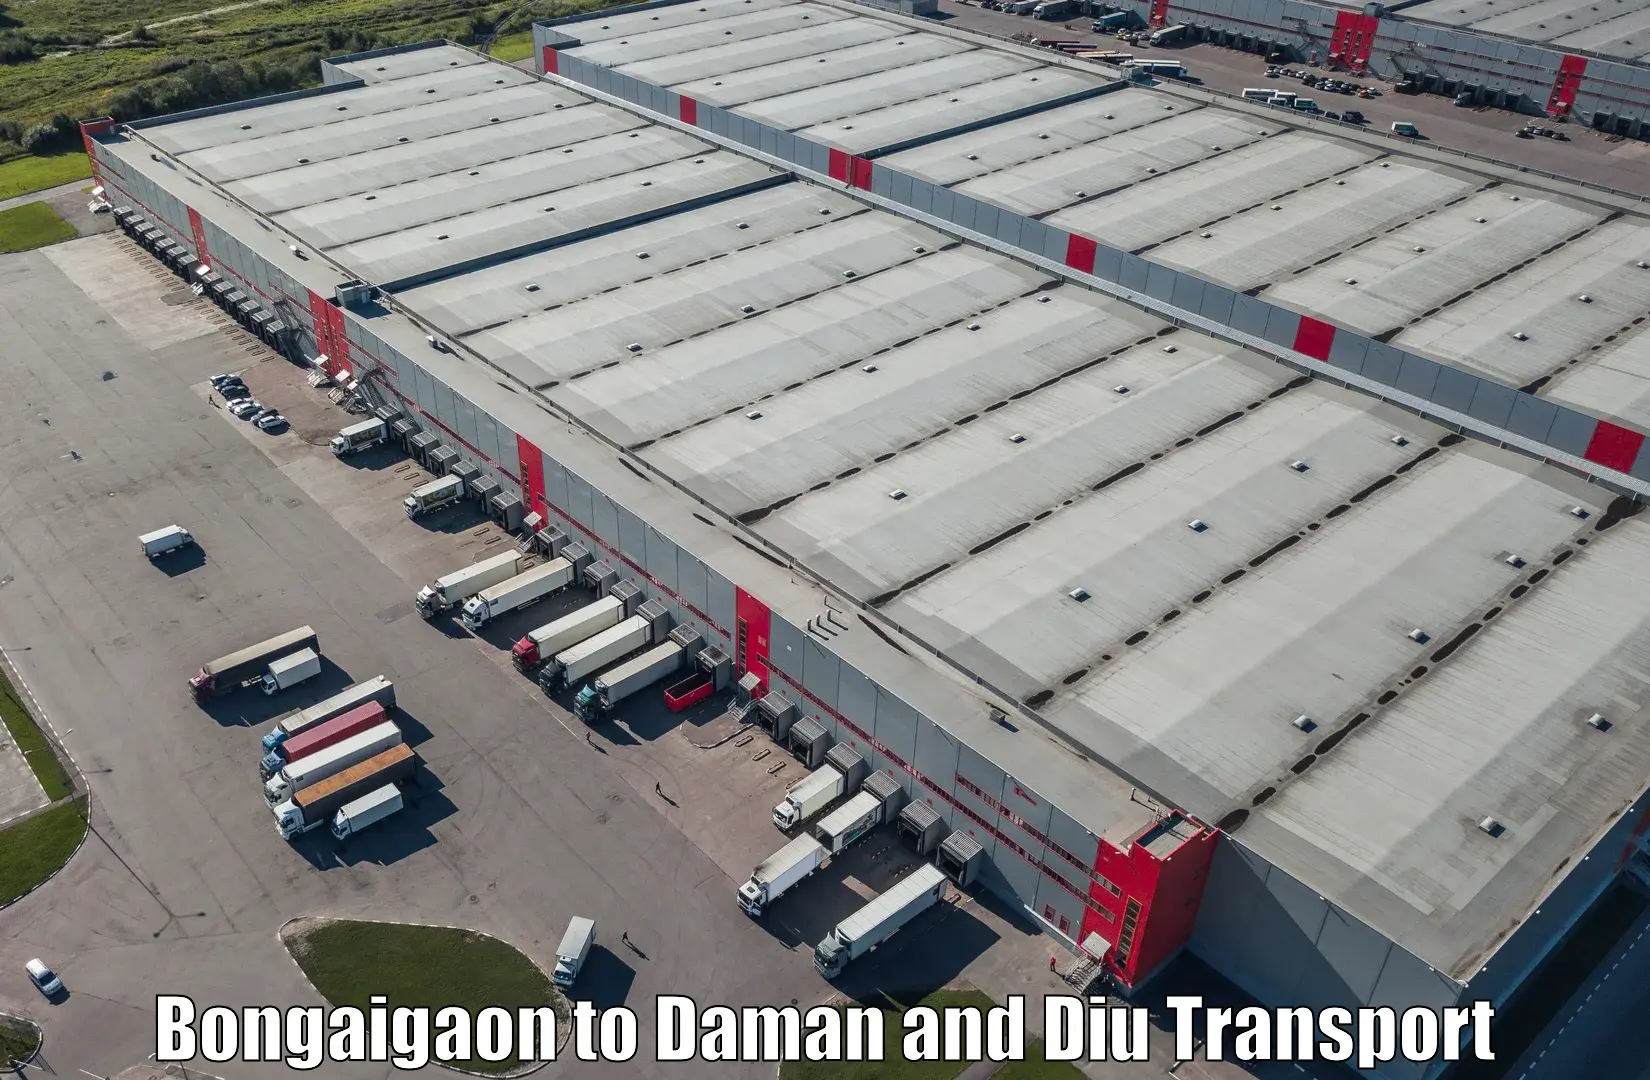 Furniture transport service Bongaigaon to Daman and Diu